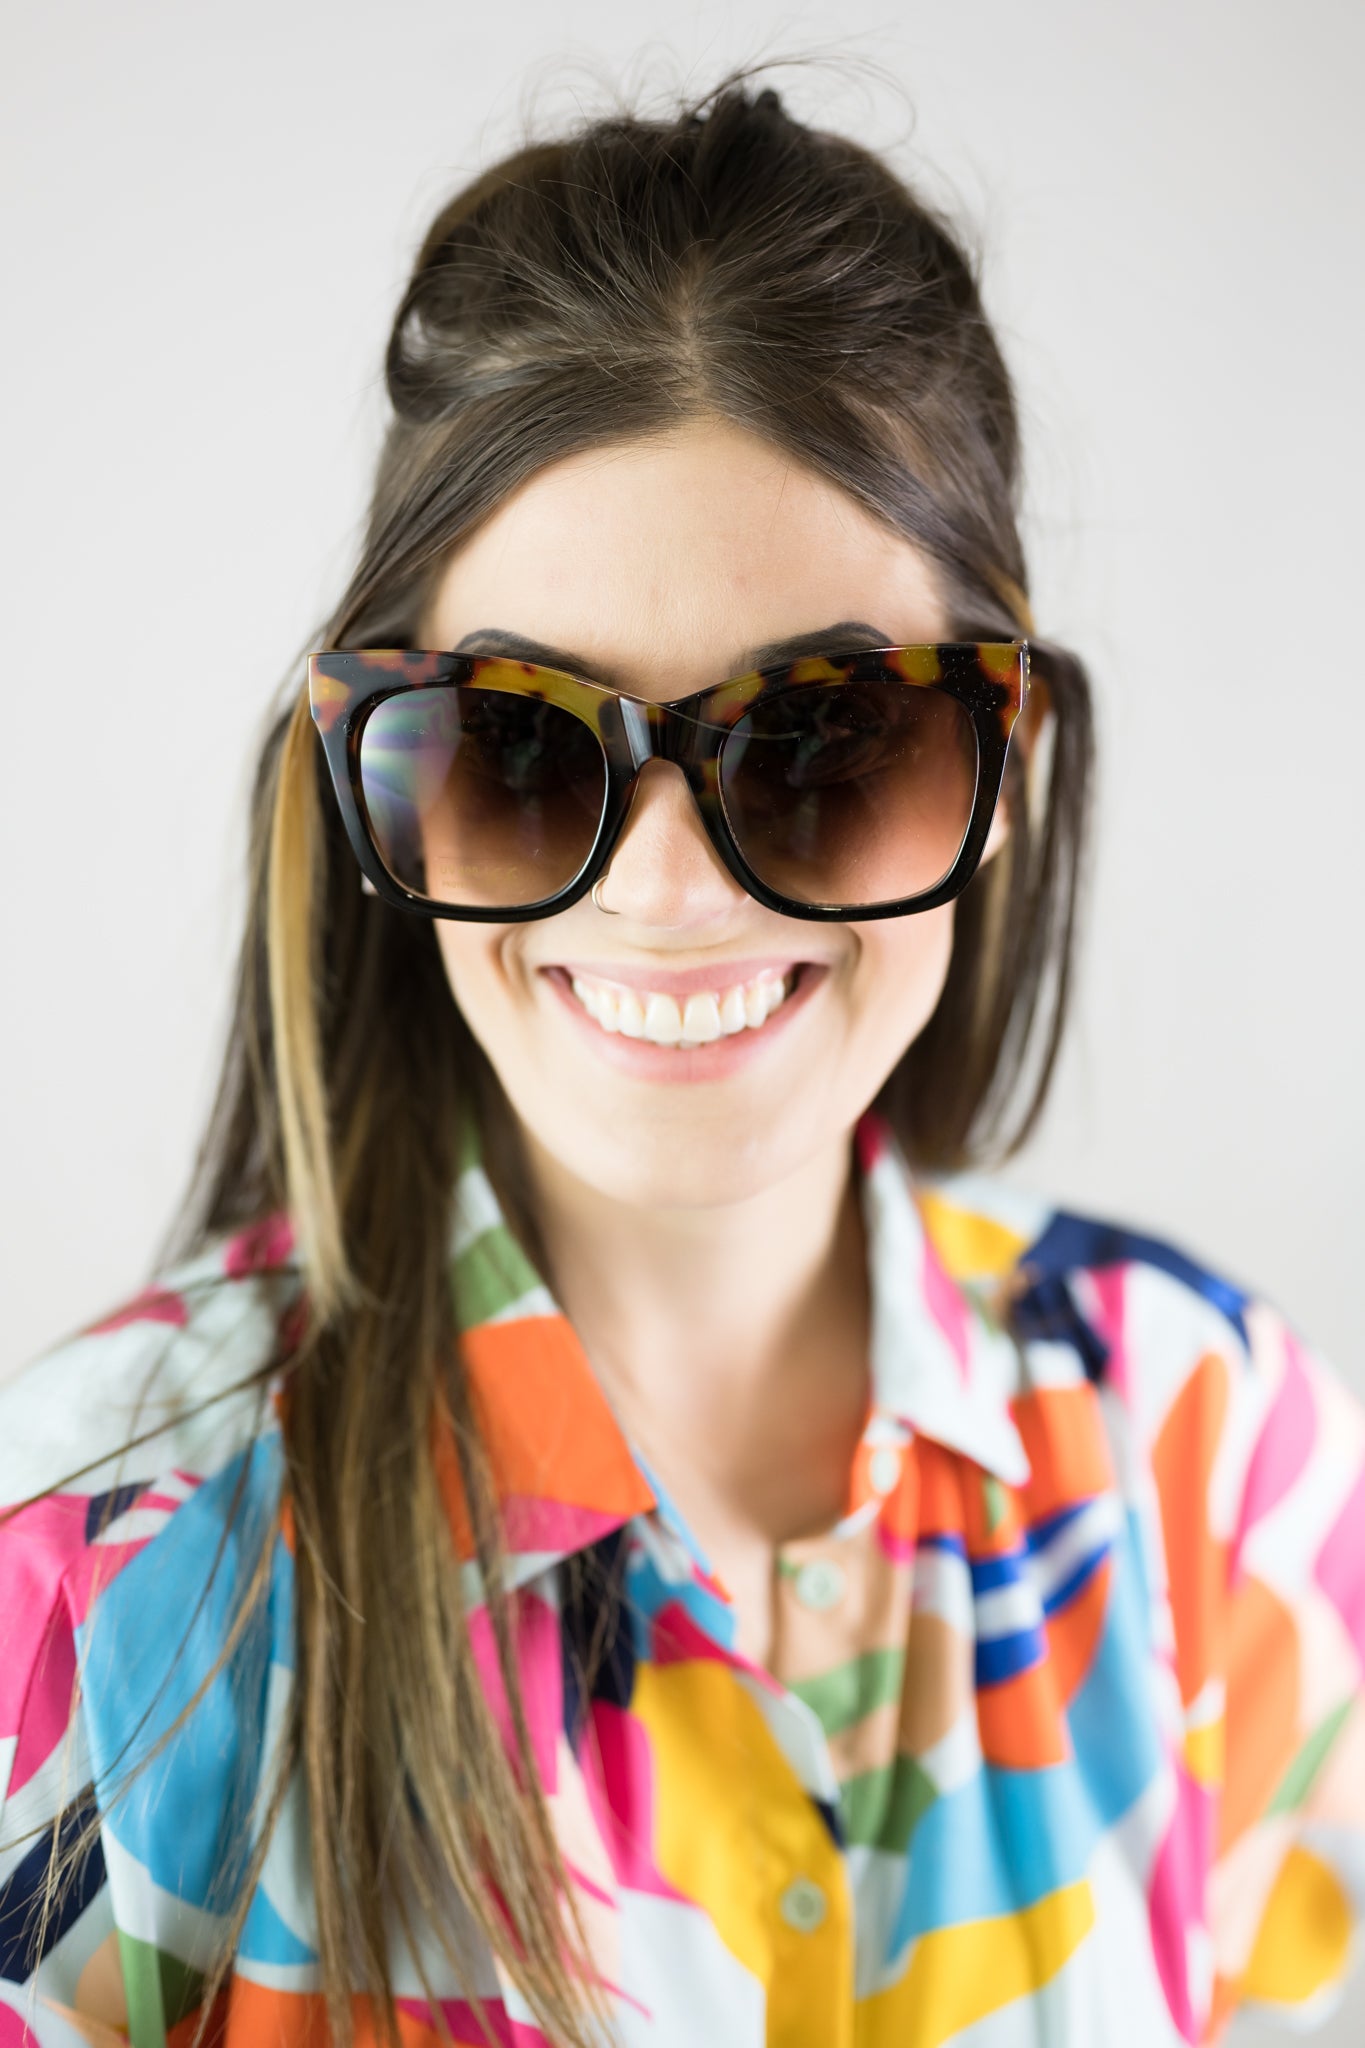 Katie Loxton Mykonos Sunglasses